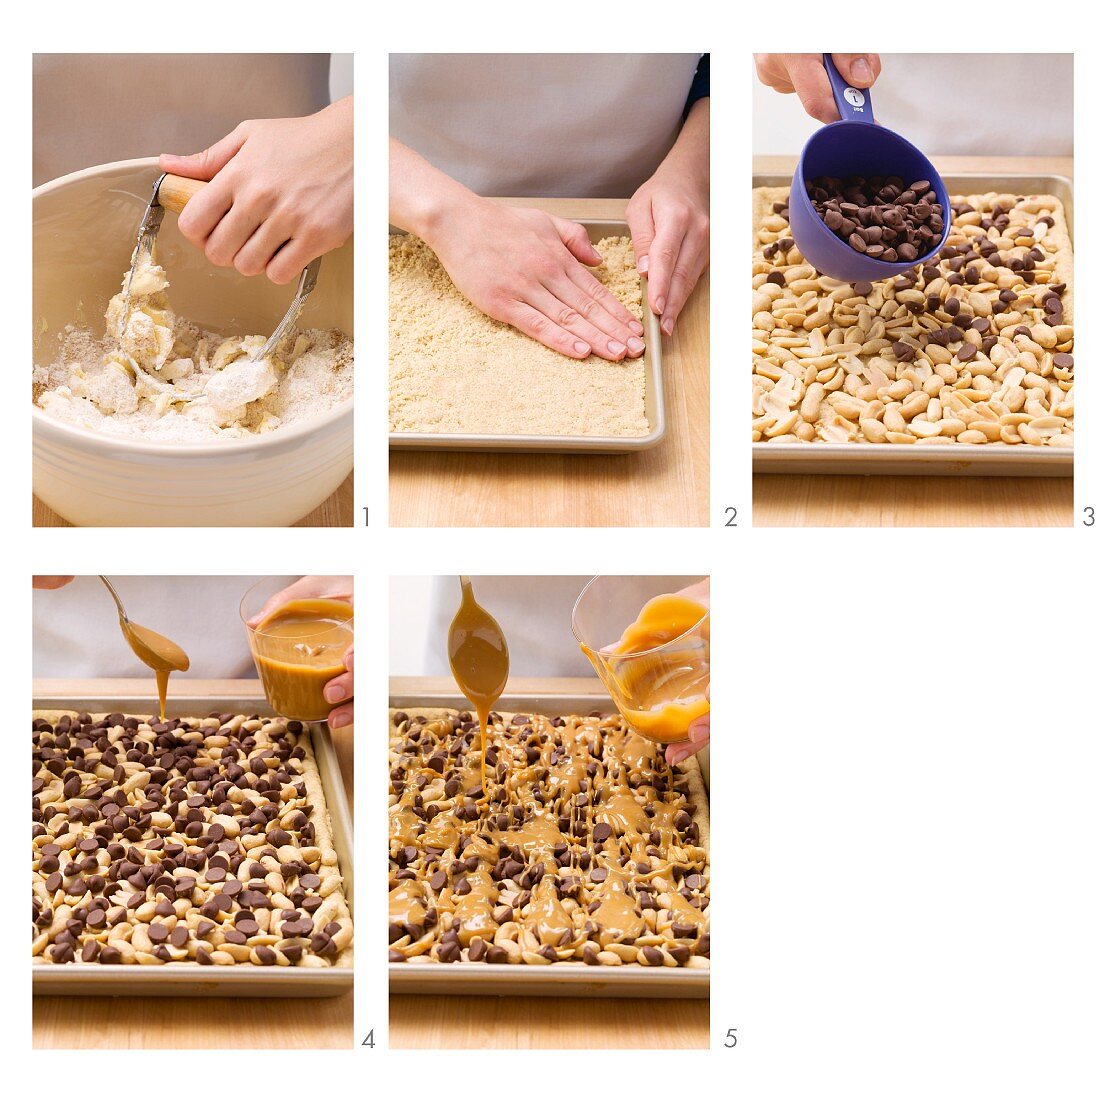 Erdnuss-Toffee-Plätzchen mit Chocolate Chips zubereiten